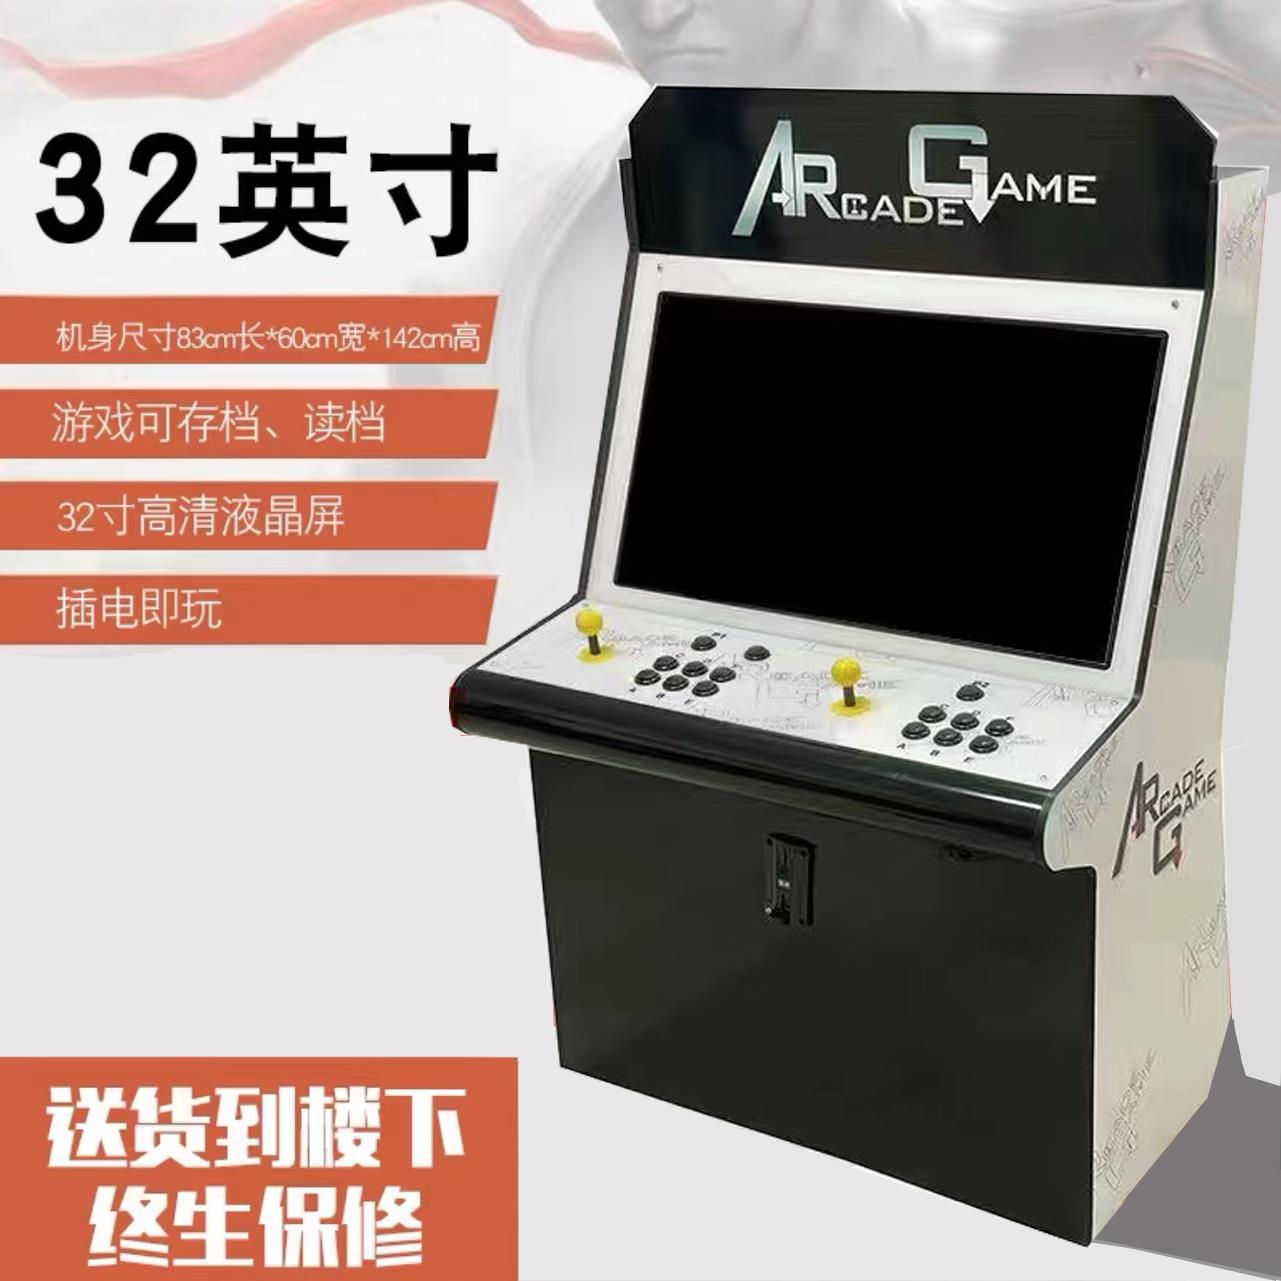 【台灣公司 超低價】新款潘多拉月光寶盒拳皇格斗游戲機臺式一體機投幣雙人搖桿游戲機